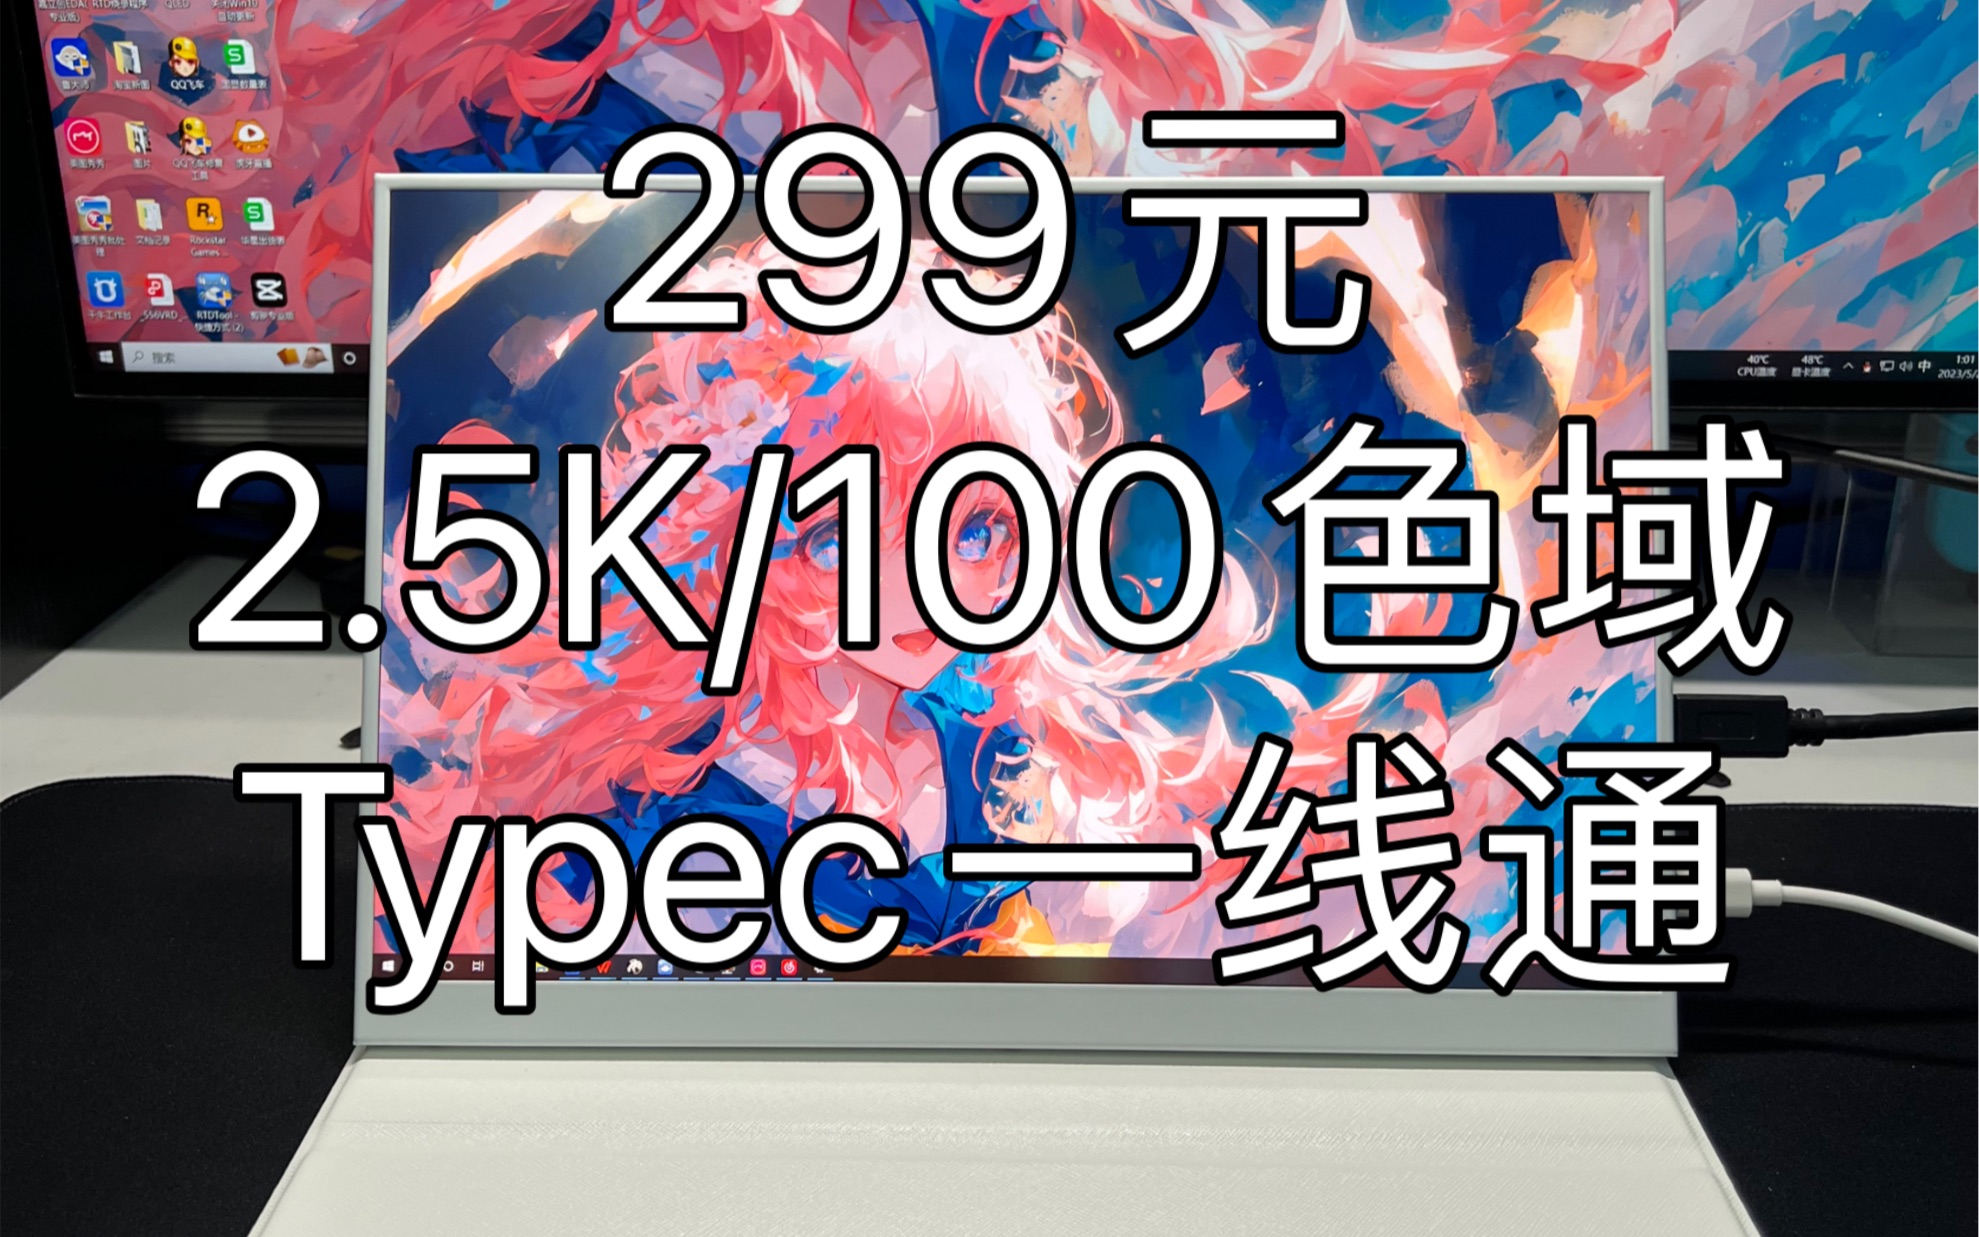 299元的2K便携屏，支持typec一线通，白色外观非常好看！100Srgb色域，色彩也很好